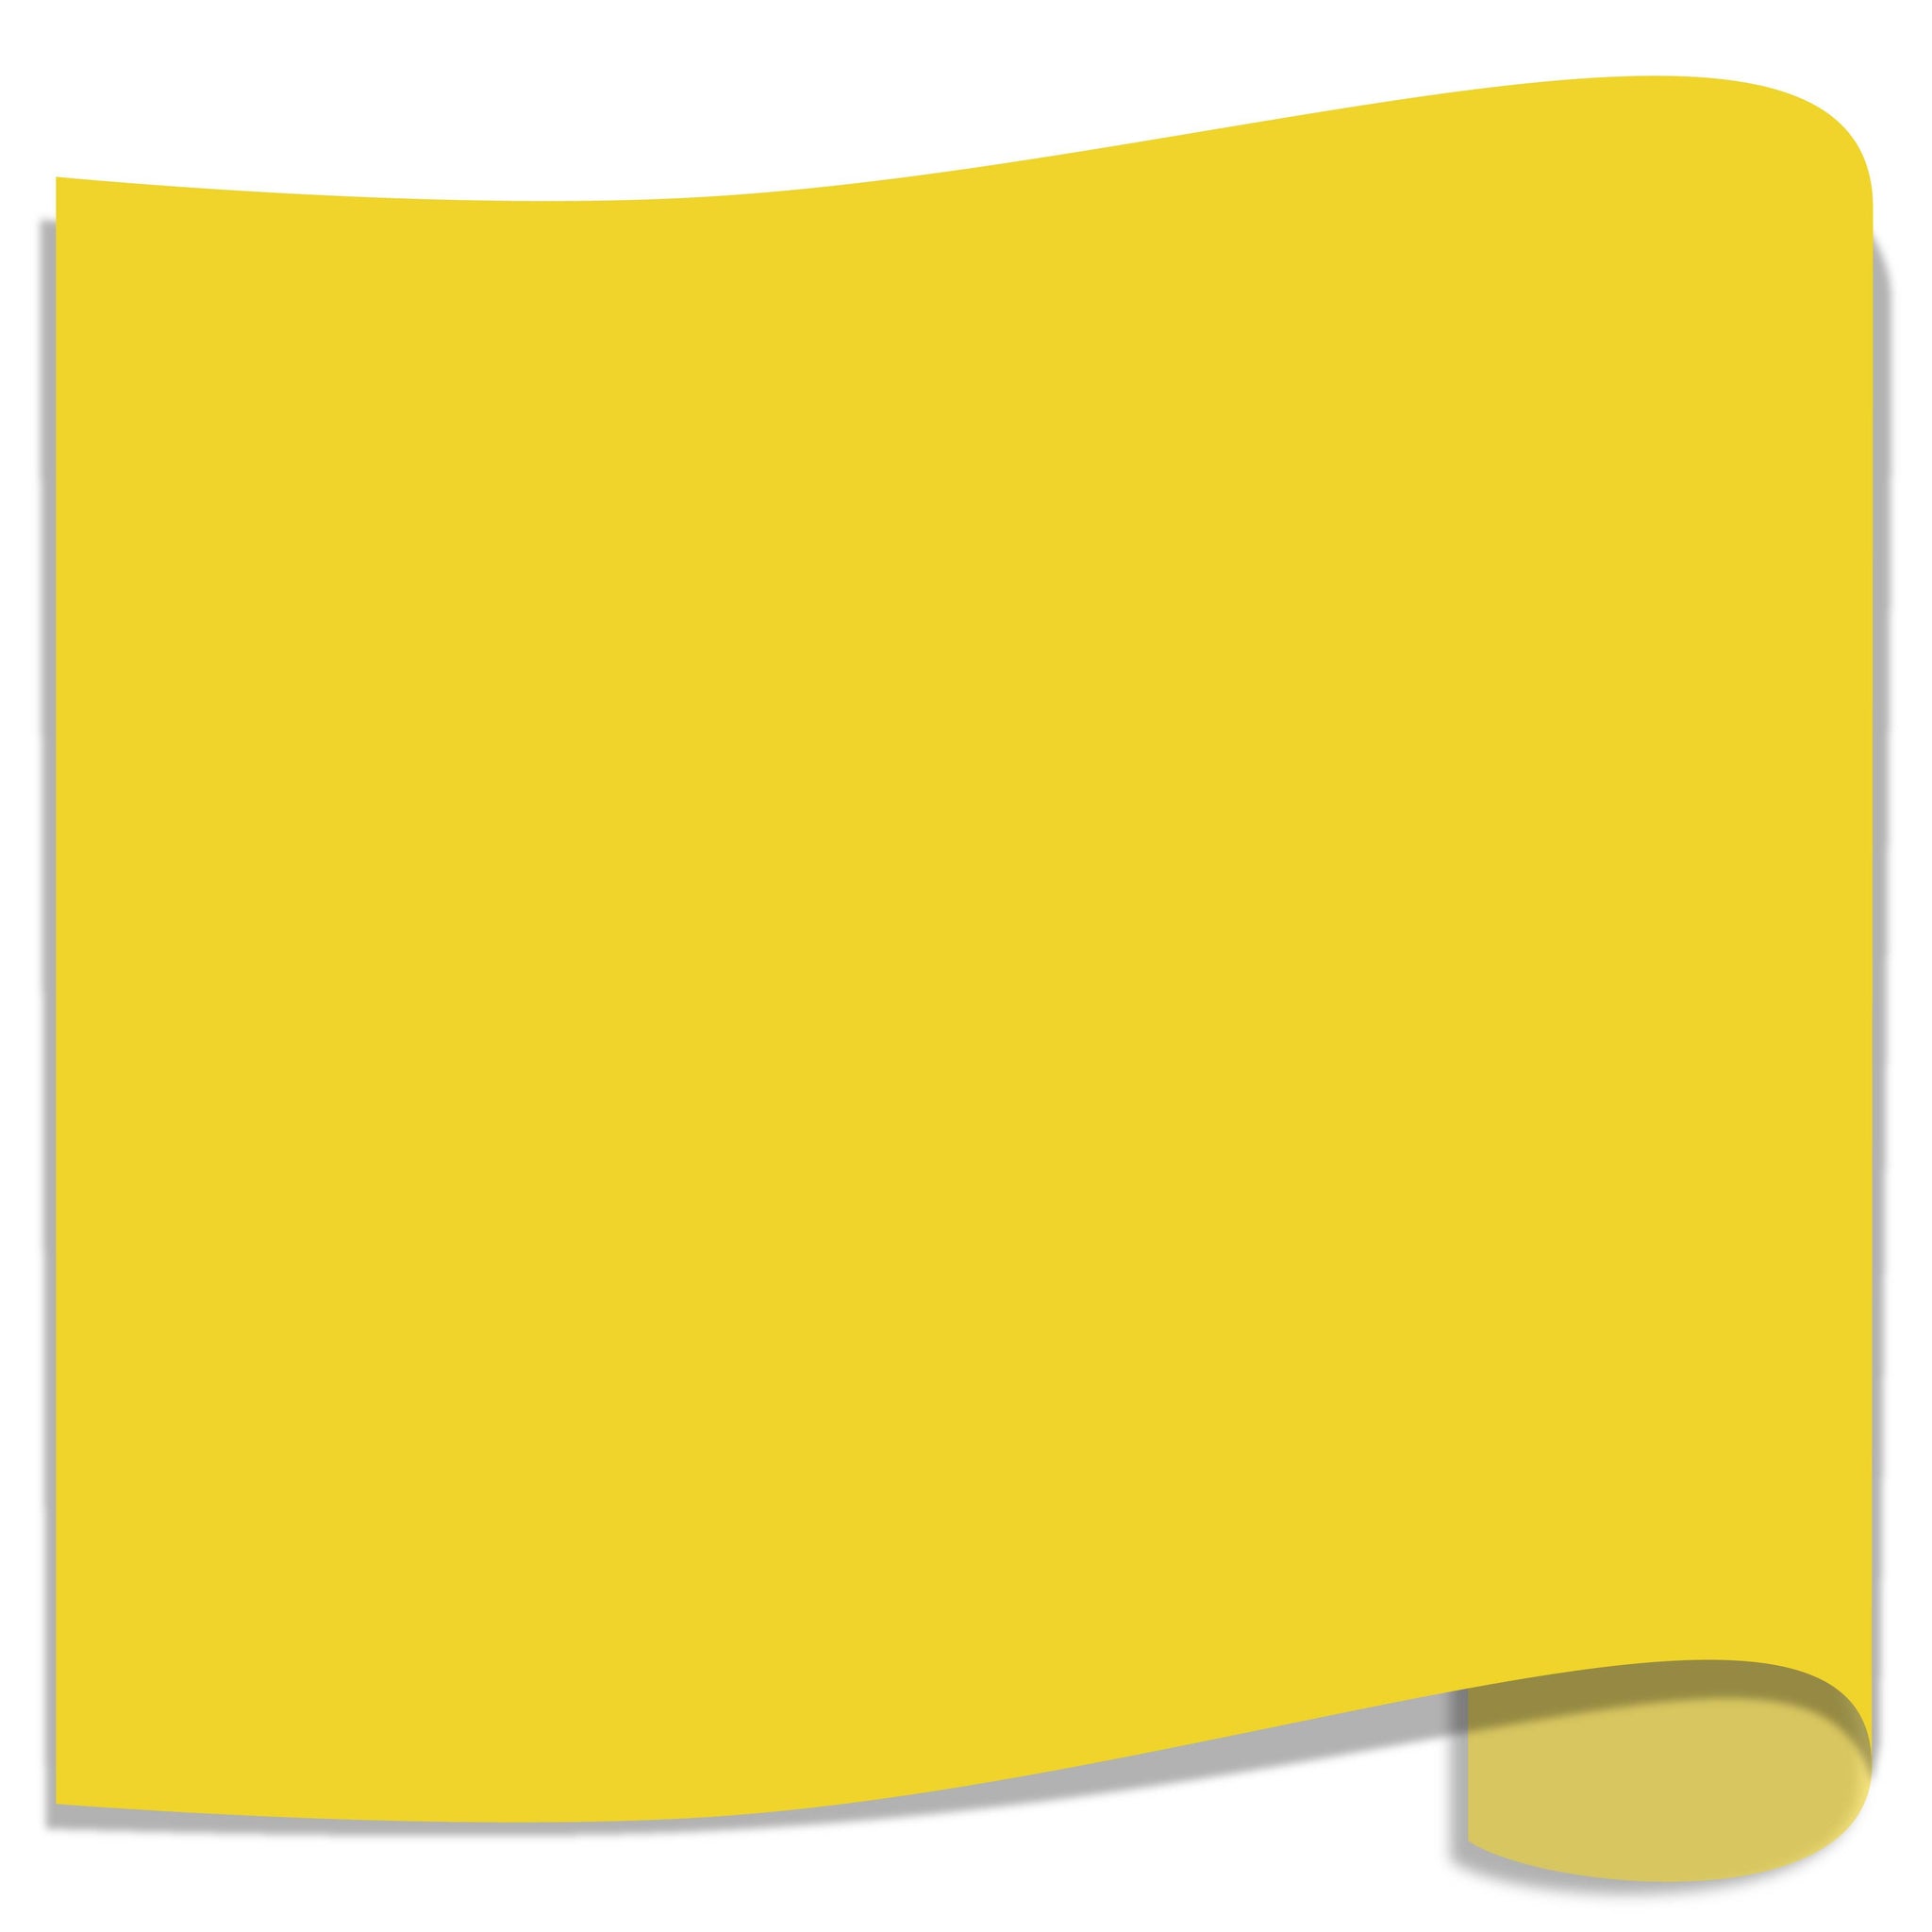 Reflective Sticker Vinyl Yellow 620 wide - Heat Flex Online